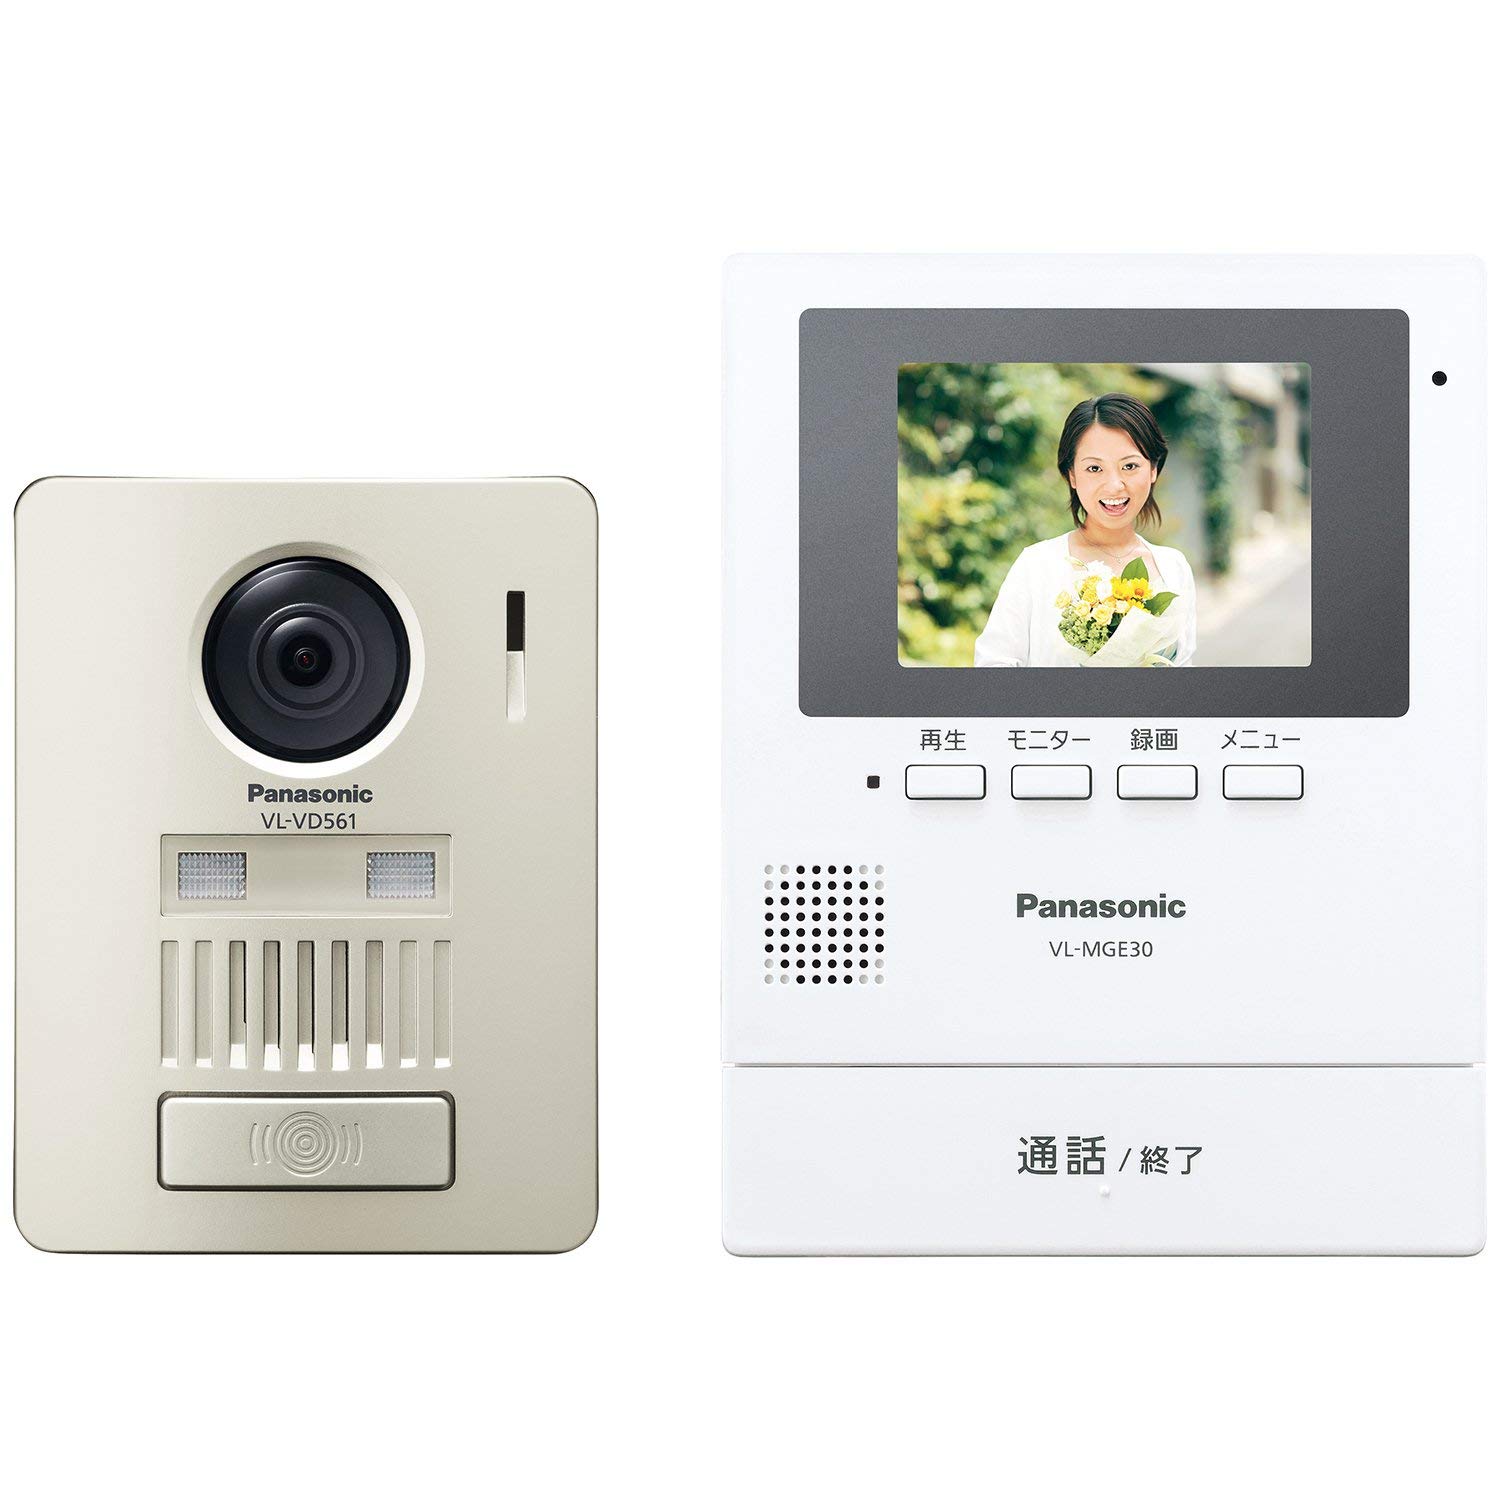 日本公司貨 國際牌 Panasonic VL SE30KL 視訊門鈴 3.5吋 LED照明 錄影 火災報知機能 日本必買代購